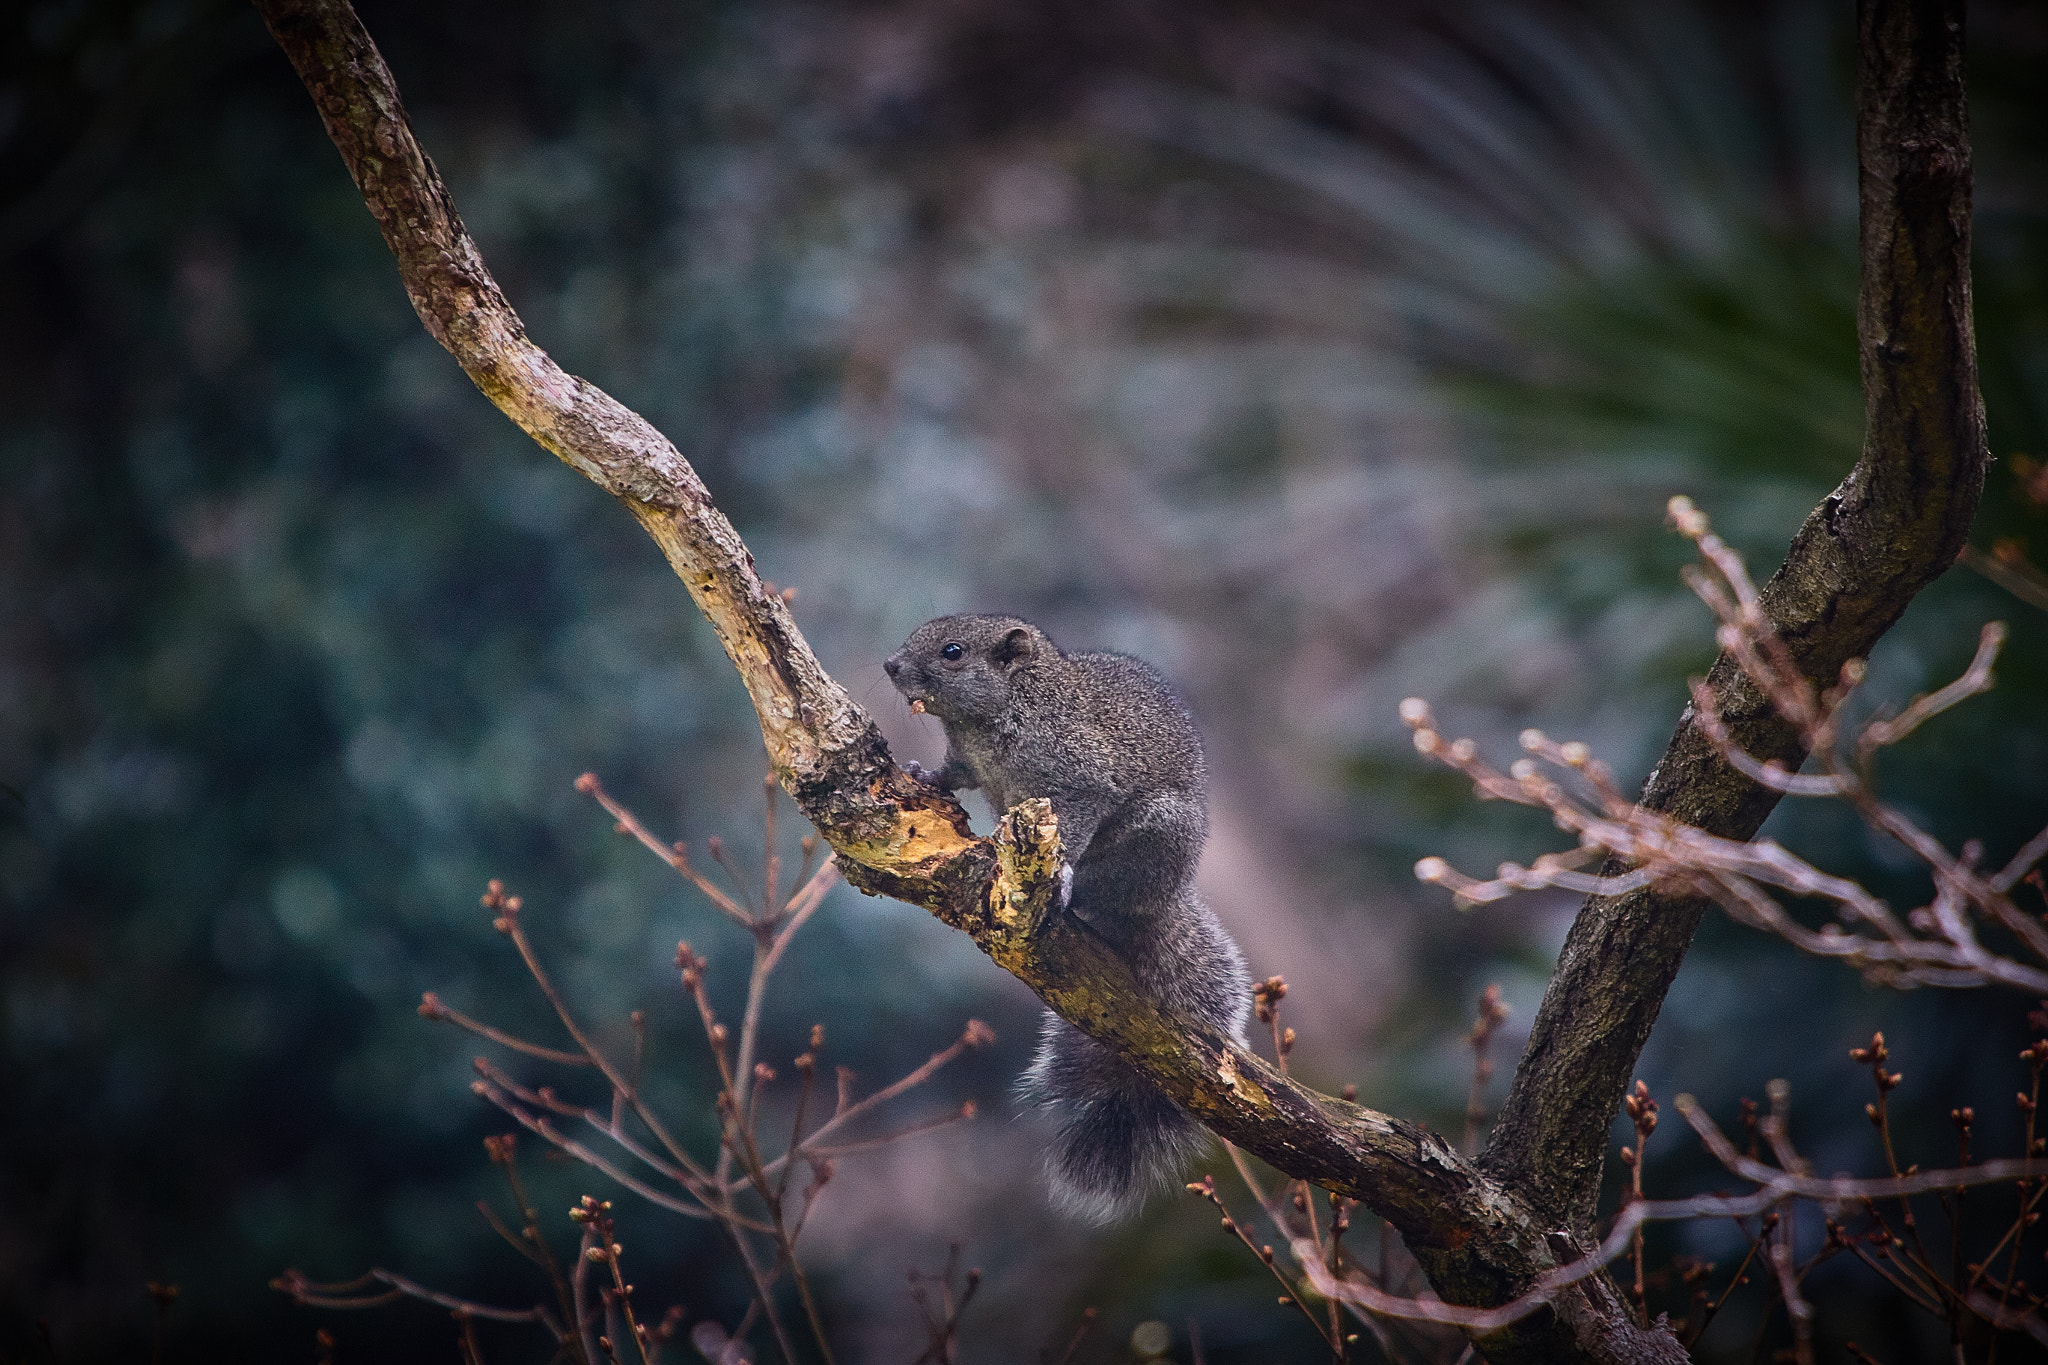 Canon EOS 70D sample photo. Squirrel photography